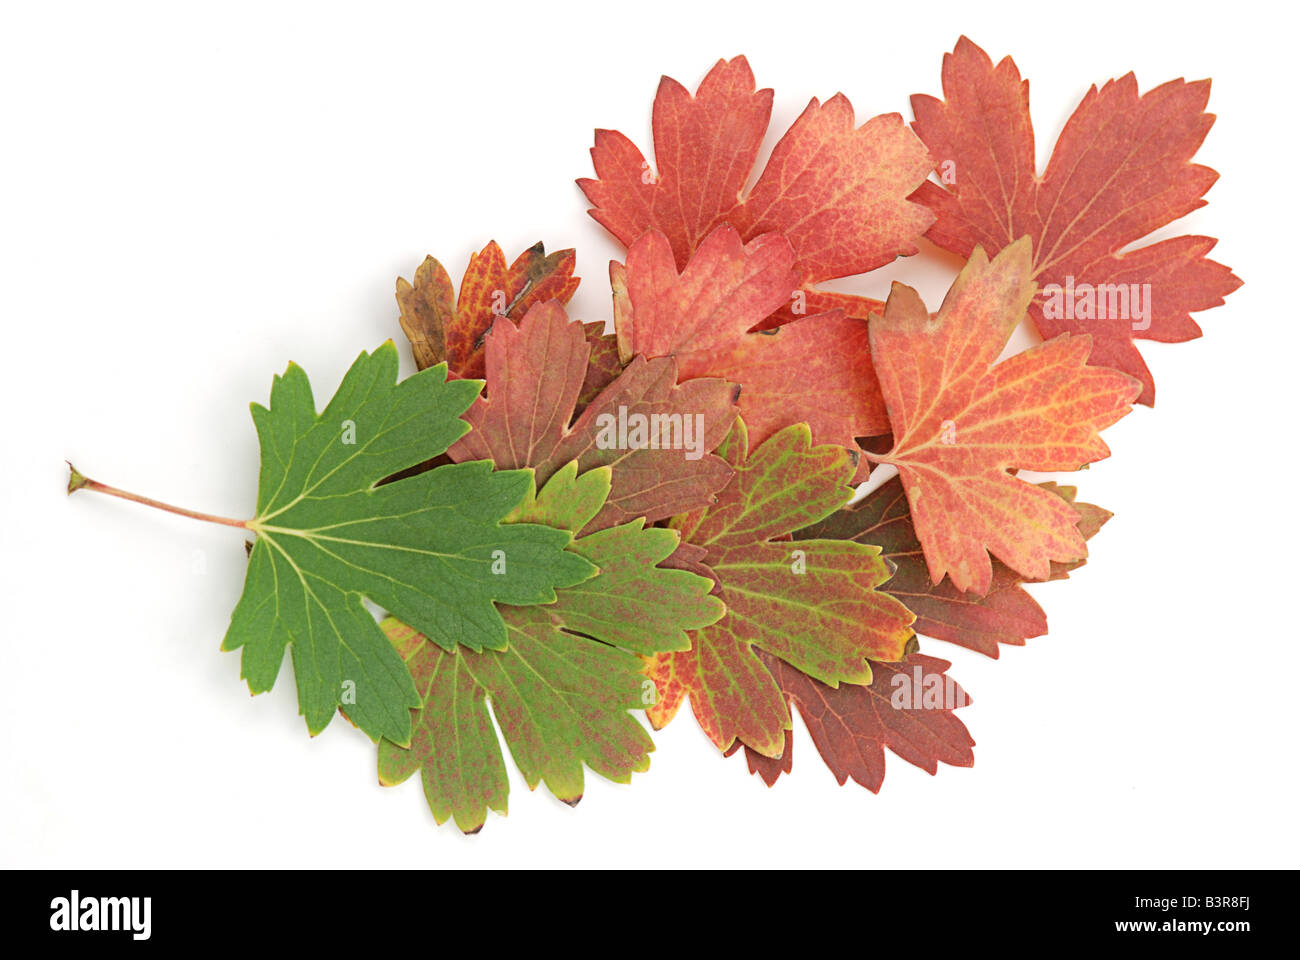 Les feuilles d'automne du vert au rouge Banque D'Images